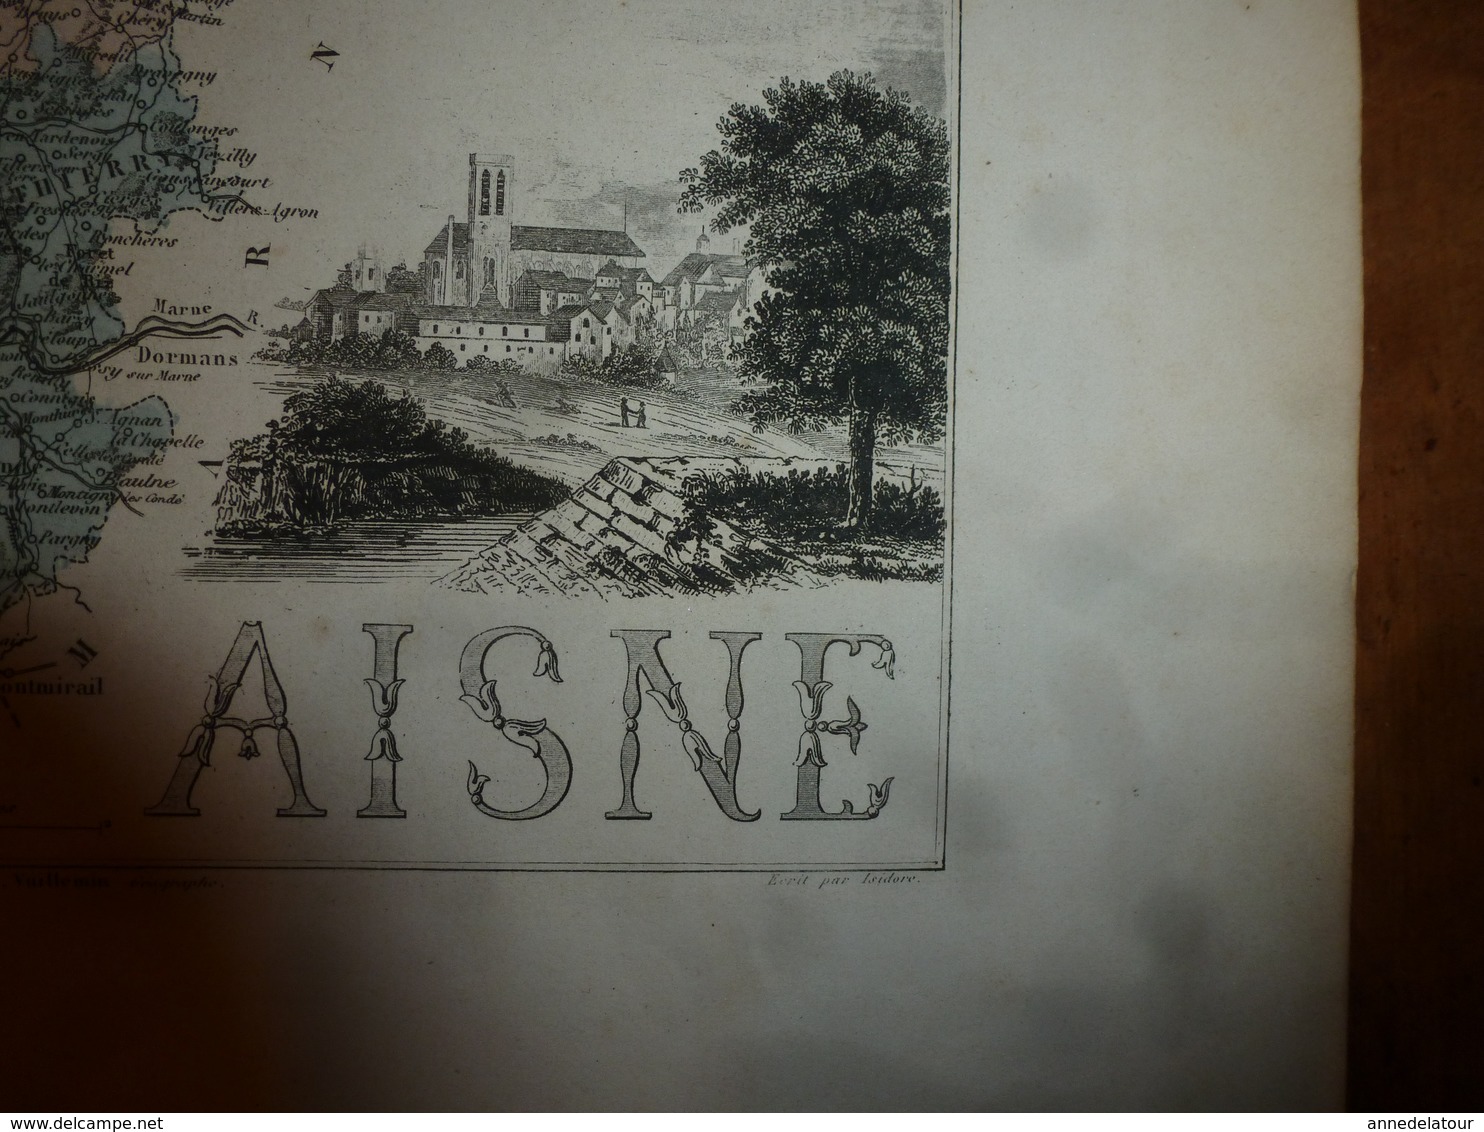 1880 :AISNE (Laon,Chateau-Thierry,St-Quentin,Soissons )Carte Géographique-Descriptive:grav.taille douce-Migeon,géographe